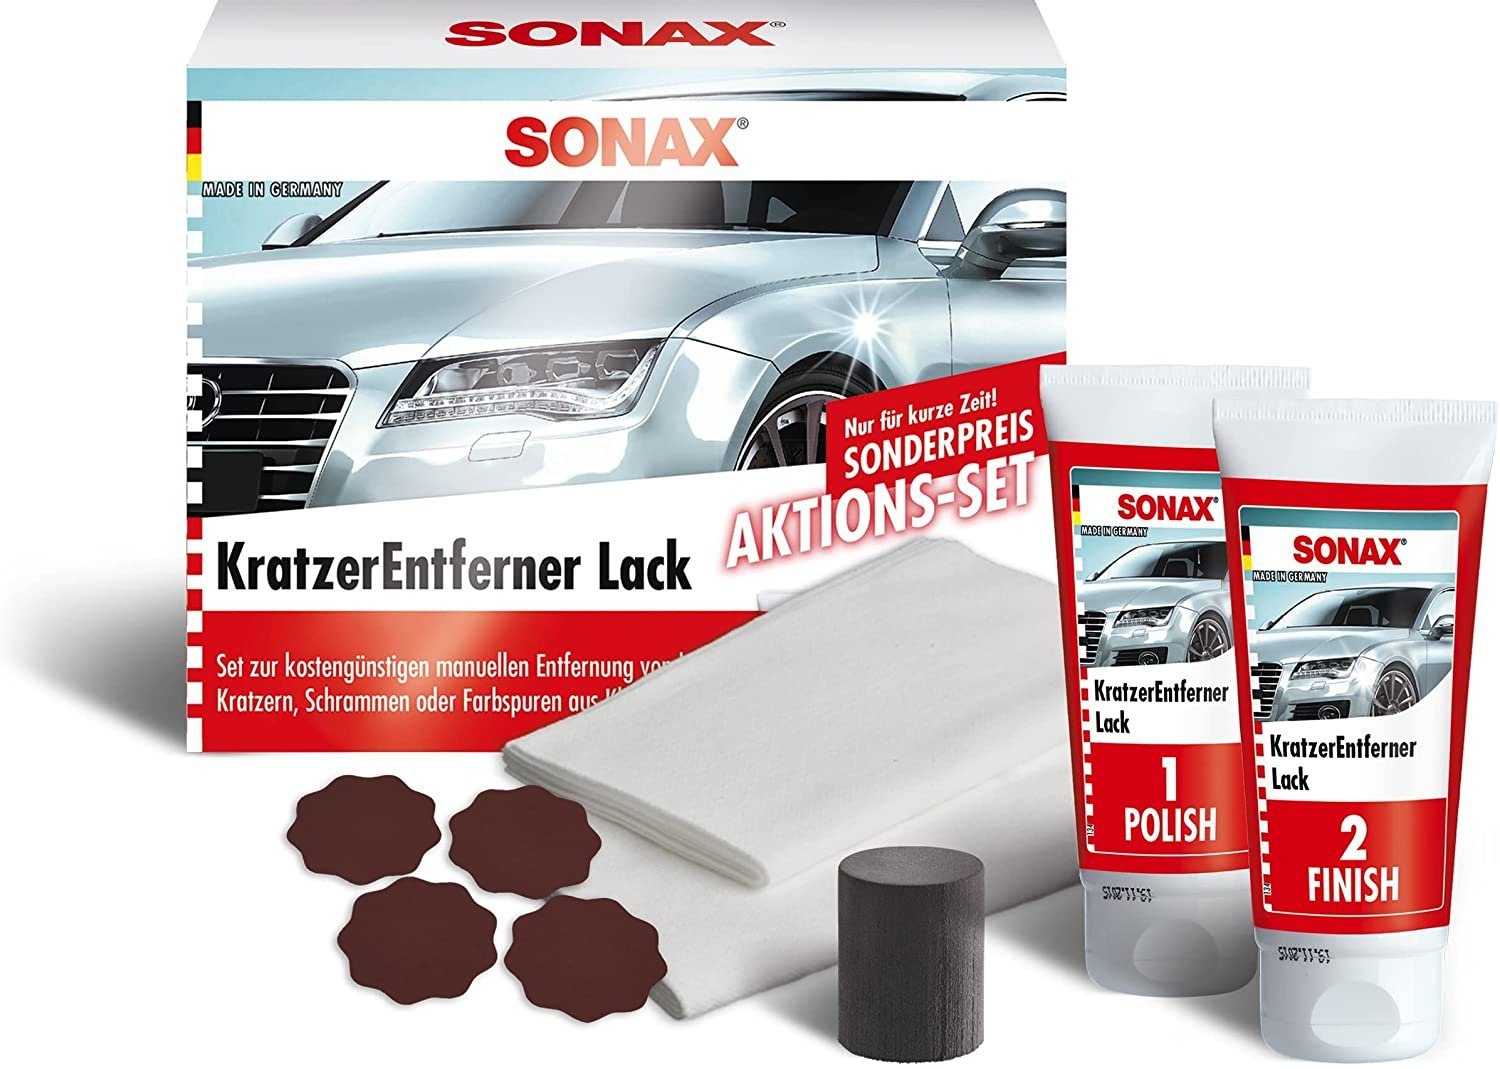 Sonax SONAX KratzerEntferner Lack AktionsSet 50 ml Lackpolitur